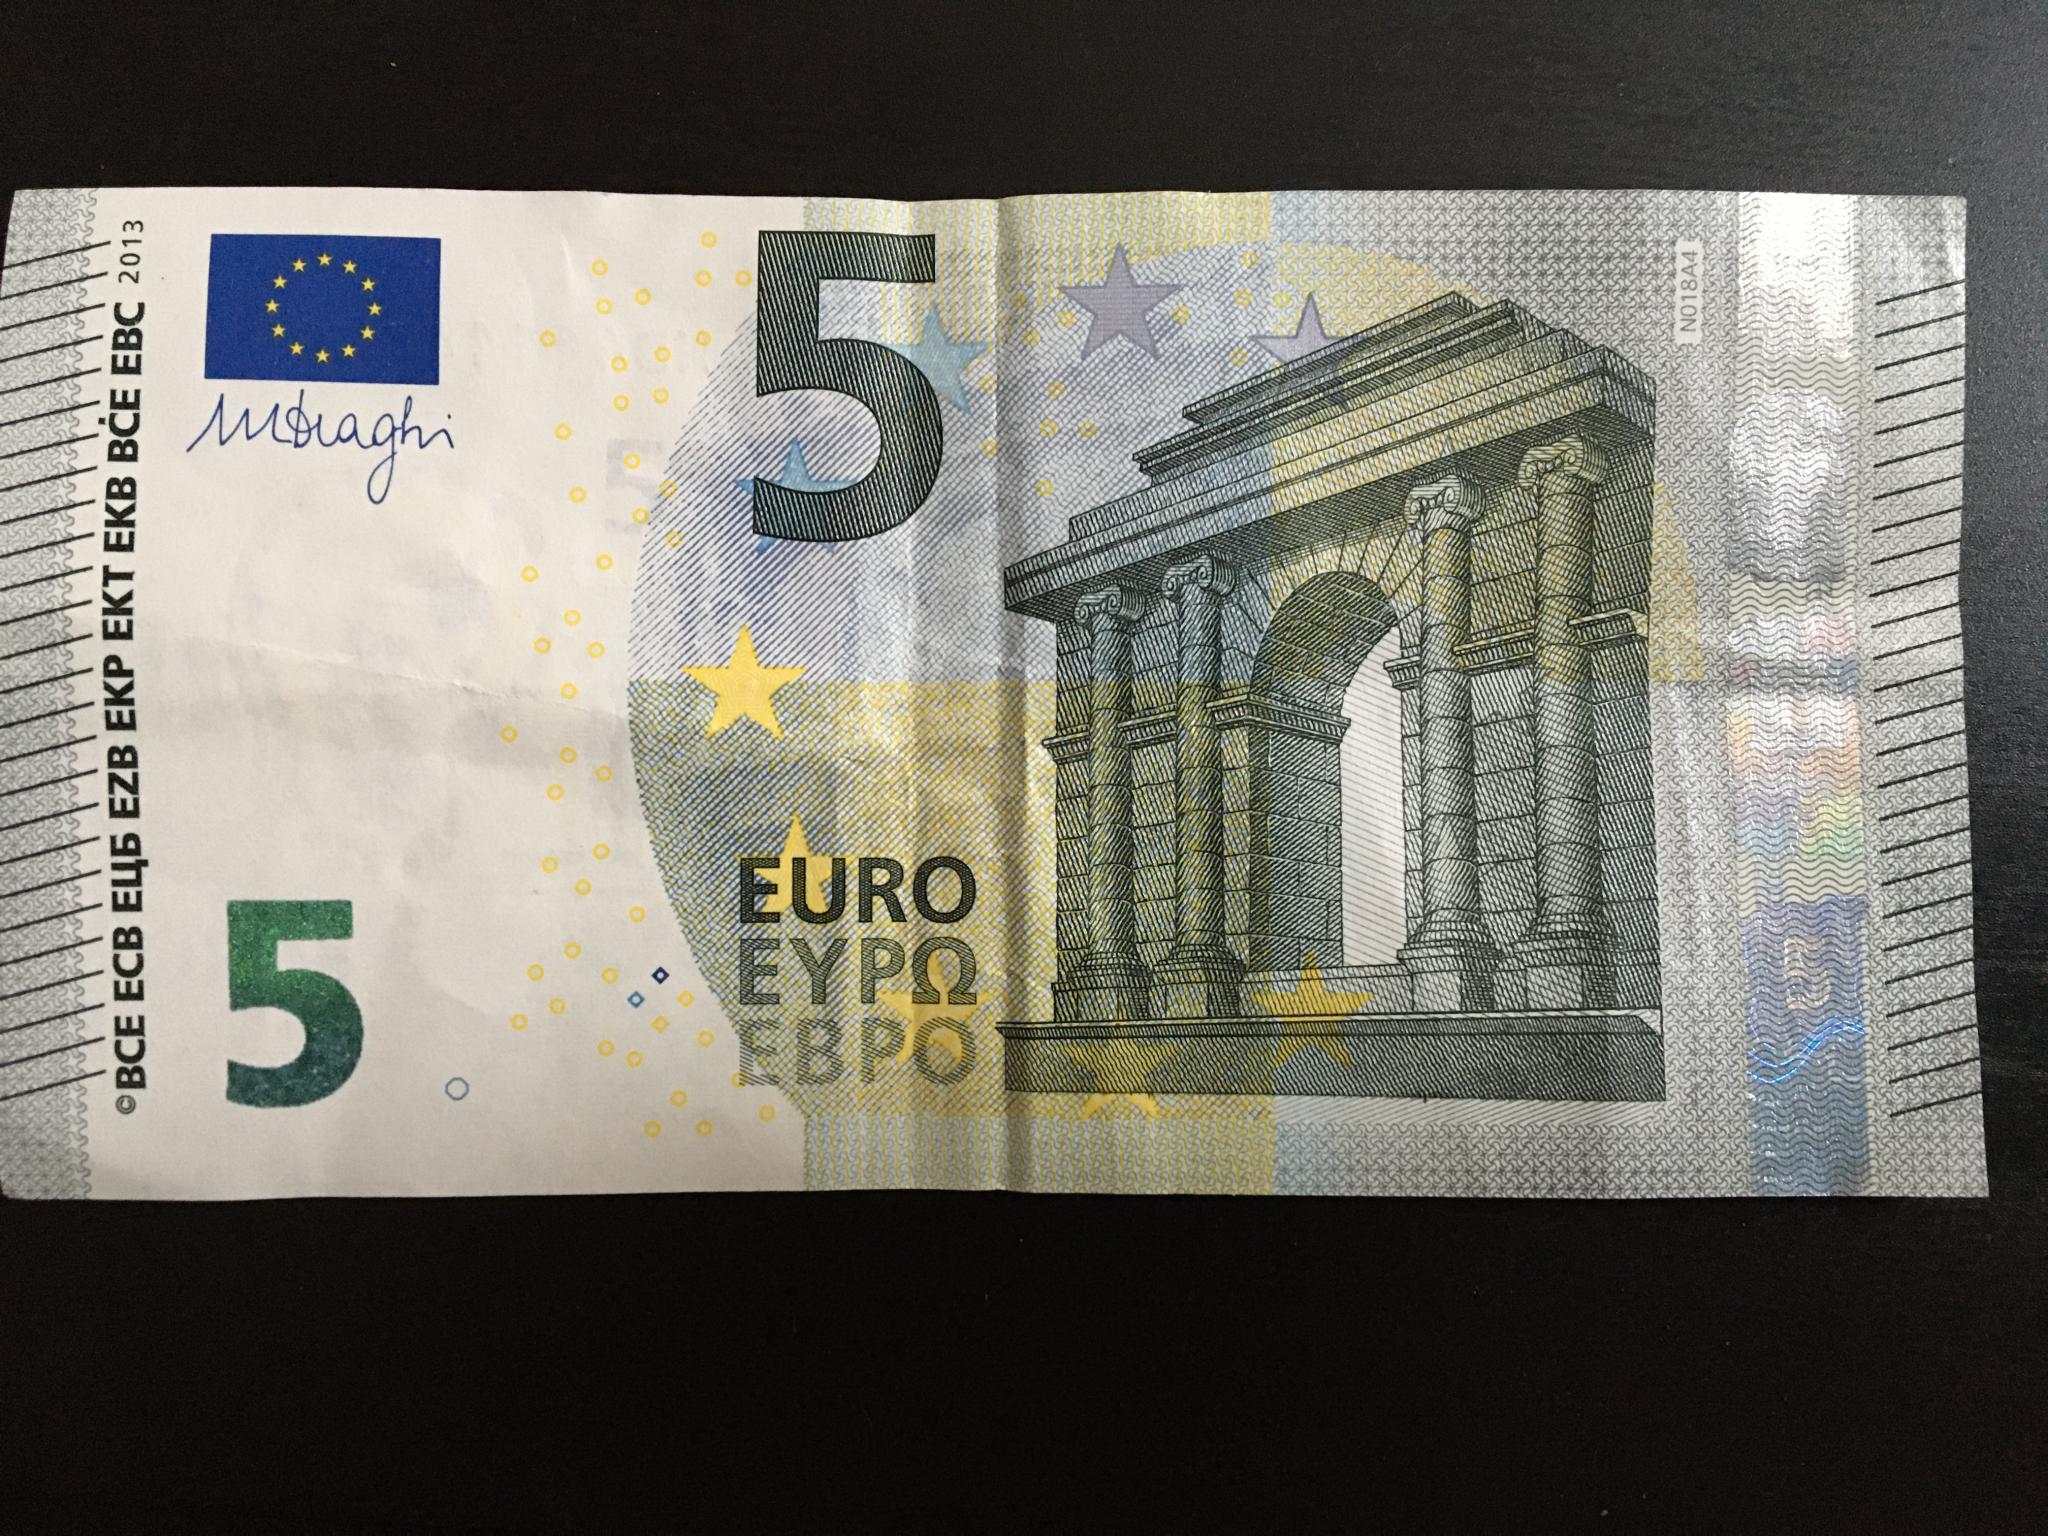 Billets de 5 euros : pas distribués dans les automates, d'où viennent-ils ?